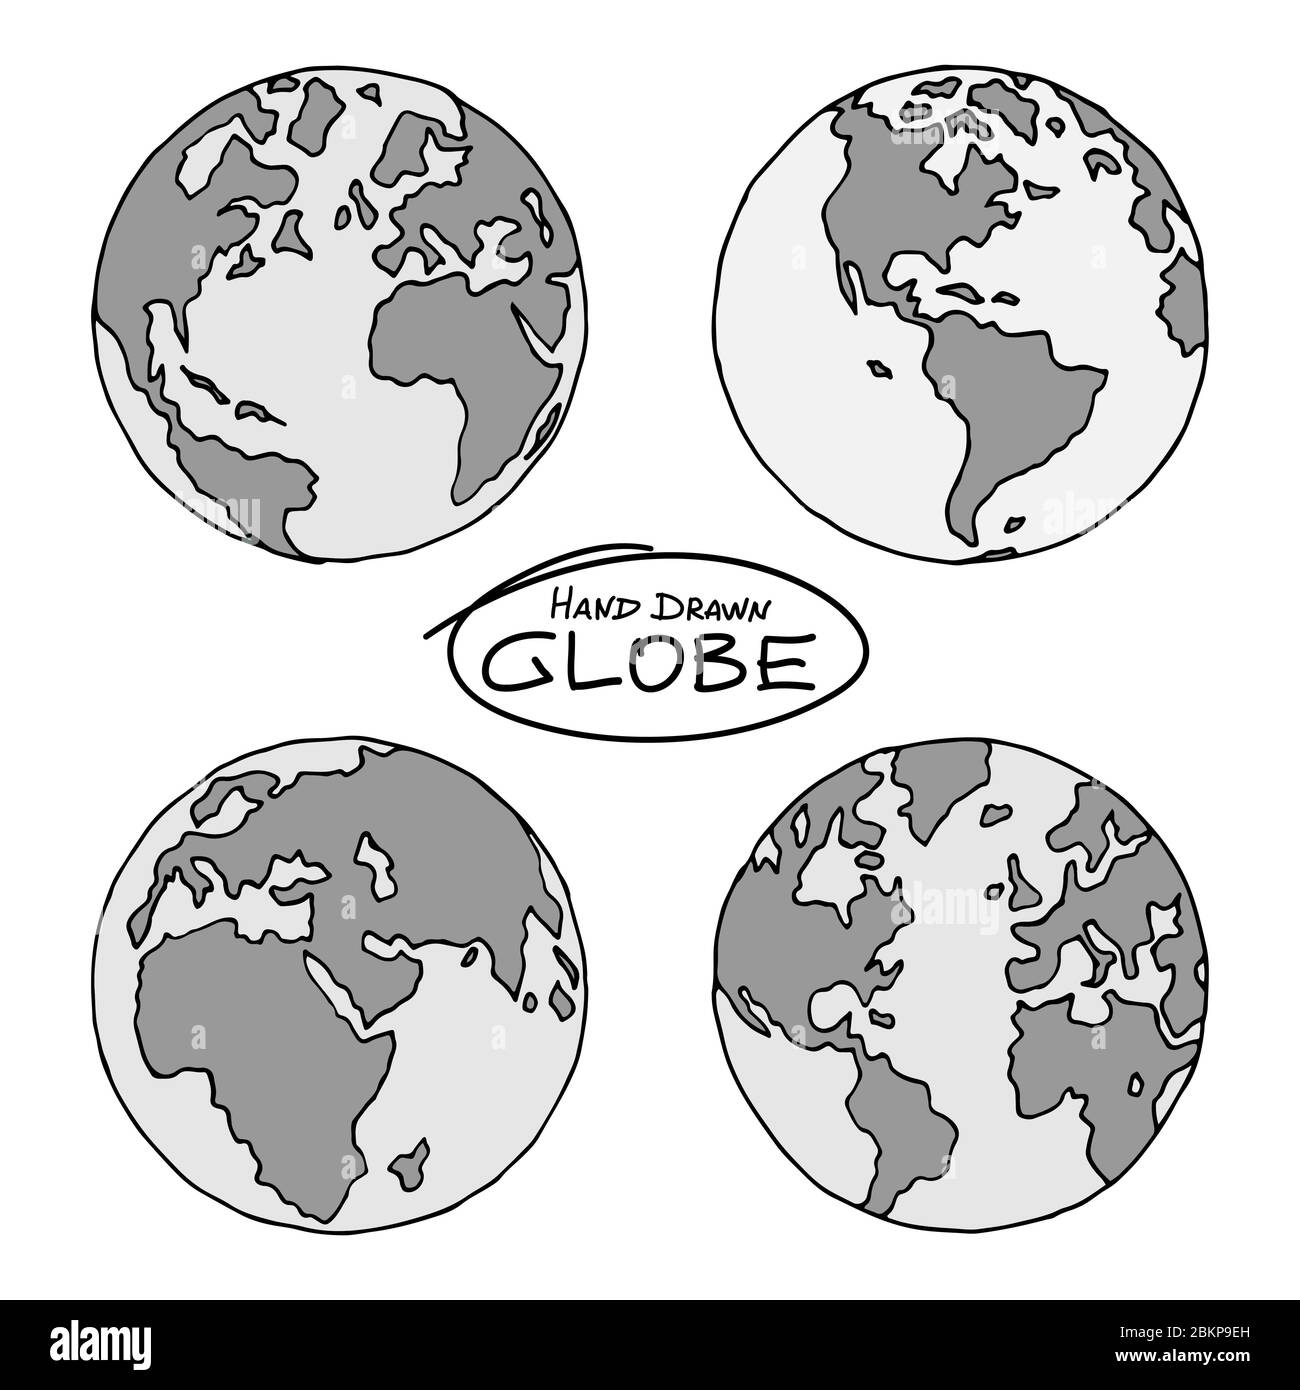 Globe dessiné à la main en quatre projections. Hémisphères ouest et est, nord et sud. Pas exactement le dessin de contour de précision de la carte du monde en noir an Illustration de Vecteur